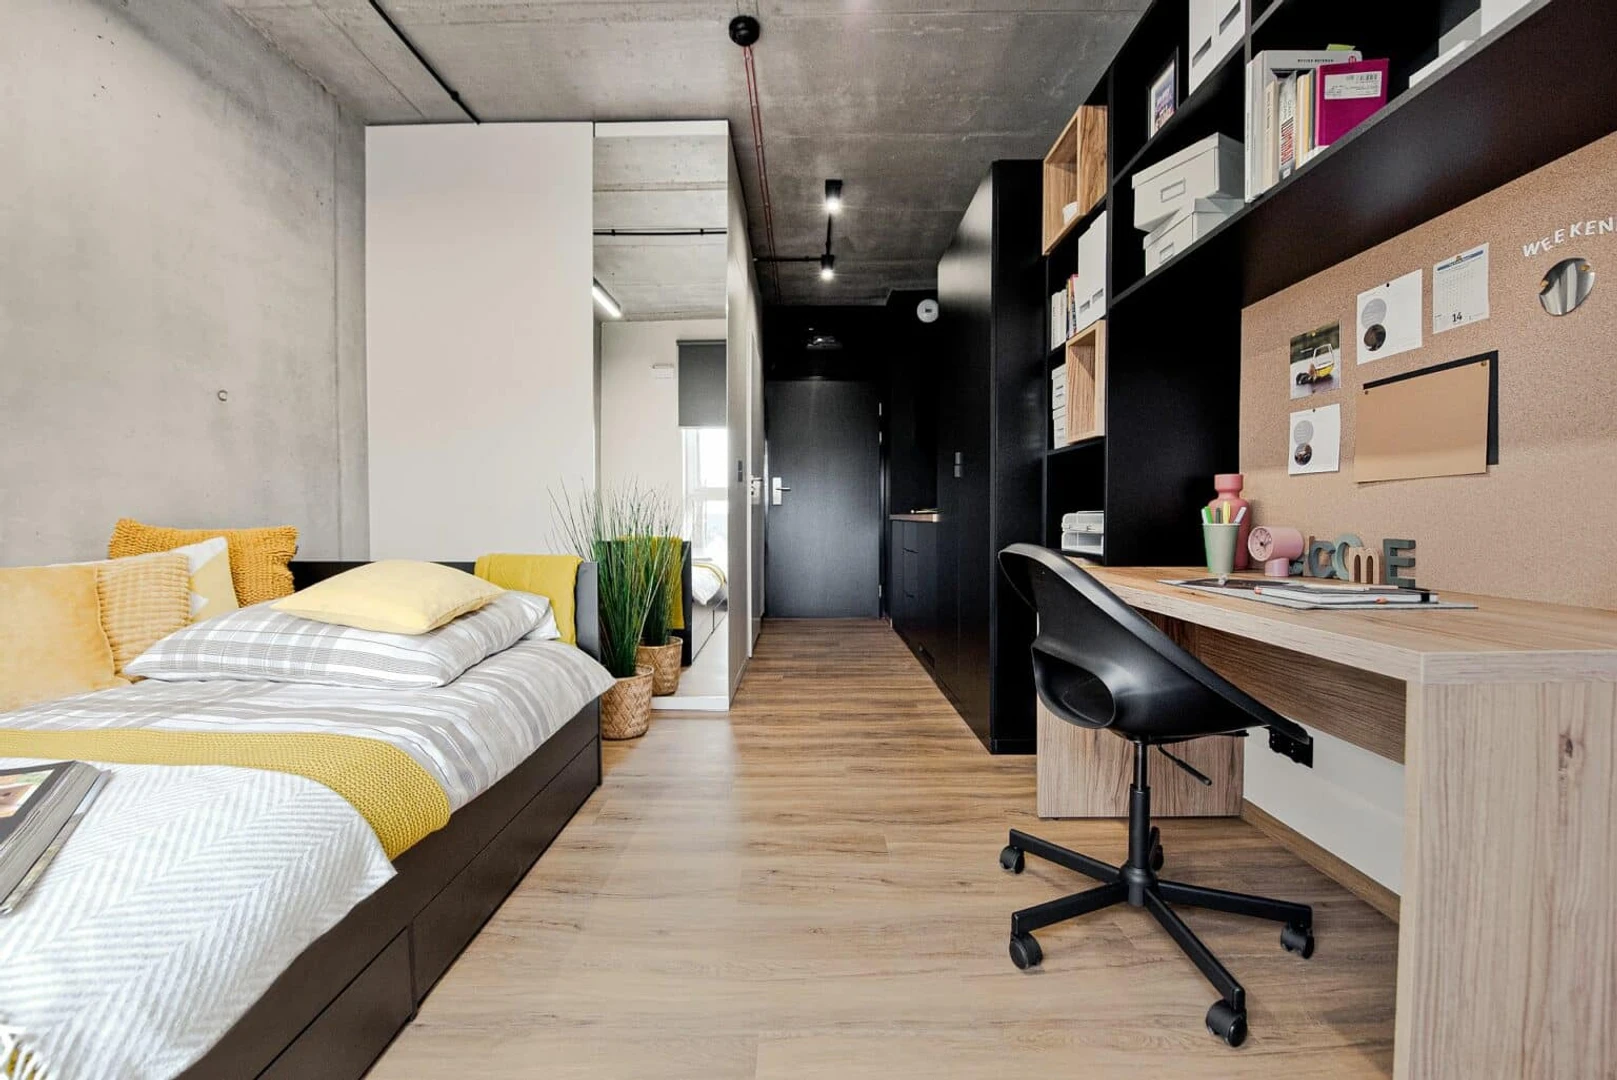 Convenient studio apartment for student living in 